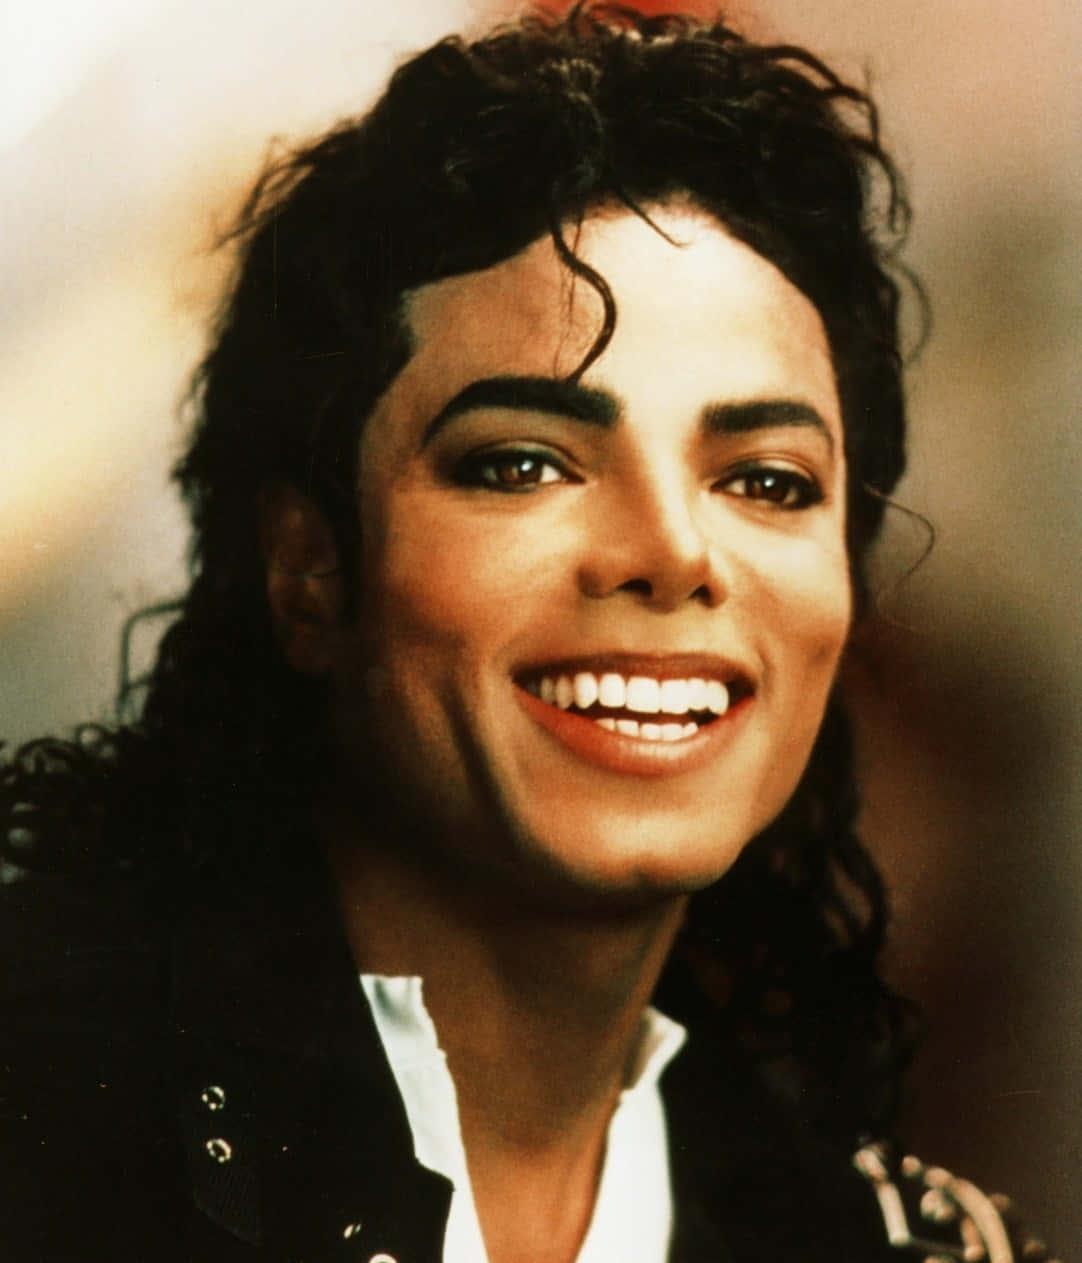 Billeder af Michael Jackson vil få dig til at smile.